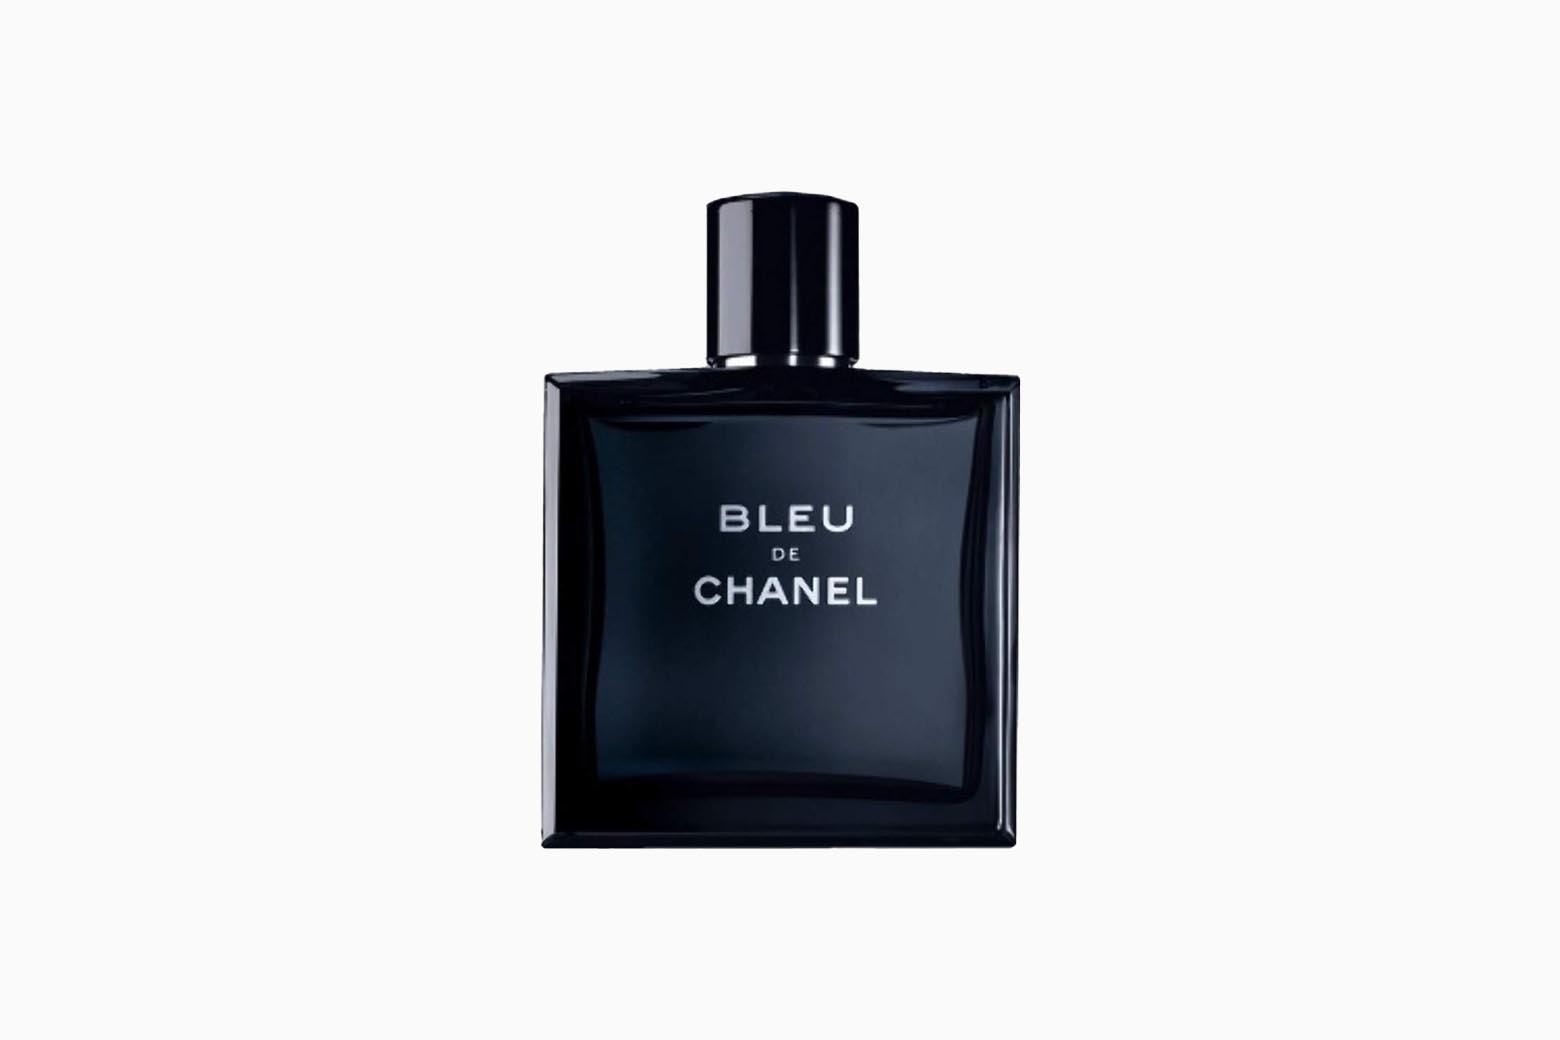 35 Best Colognes For Men: Find Your Fragrance (Ranking)